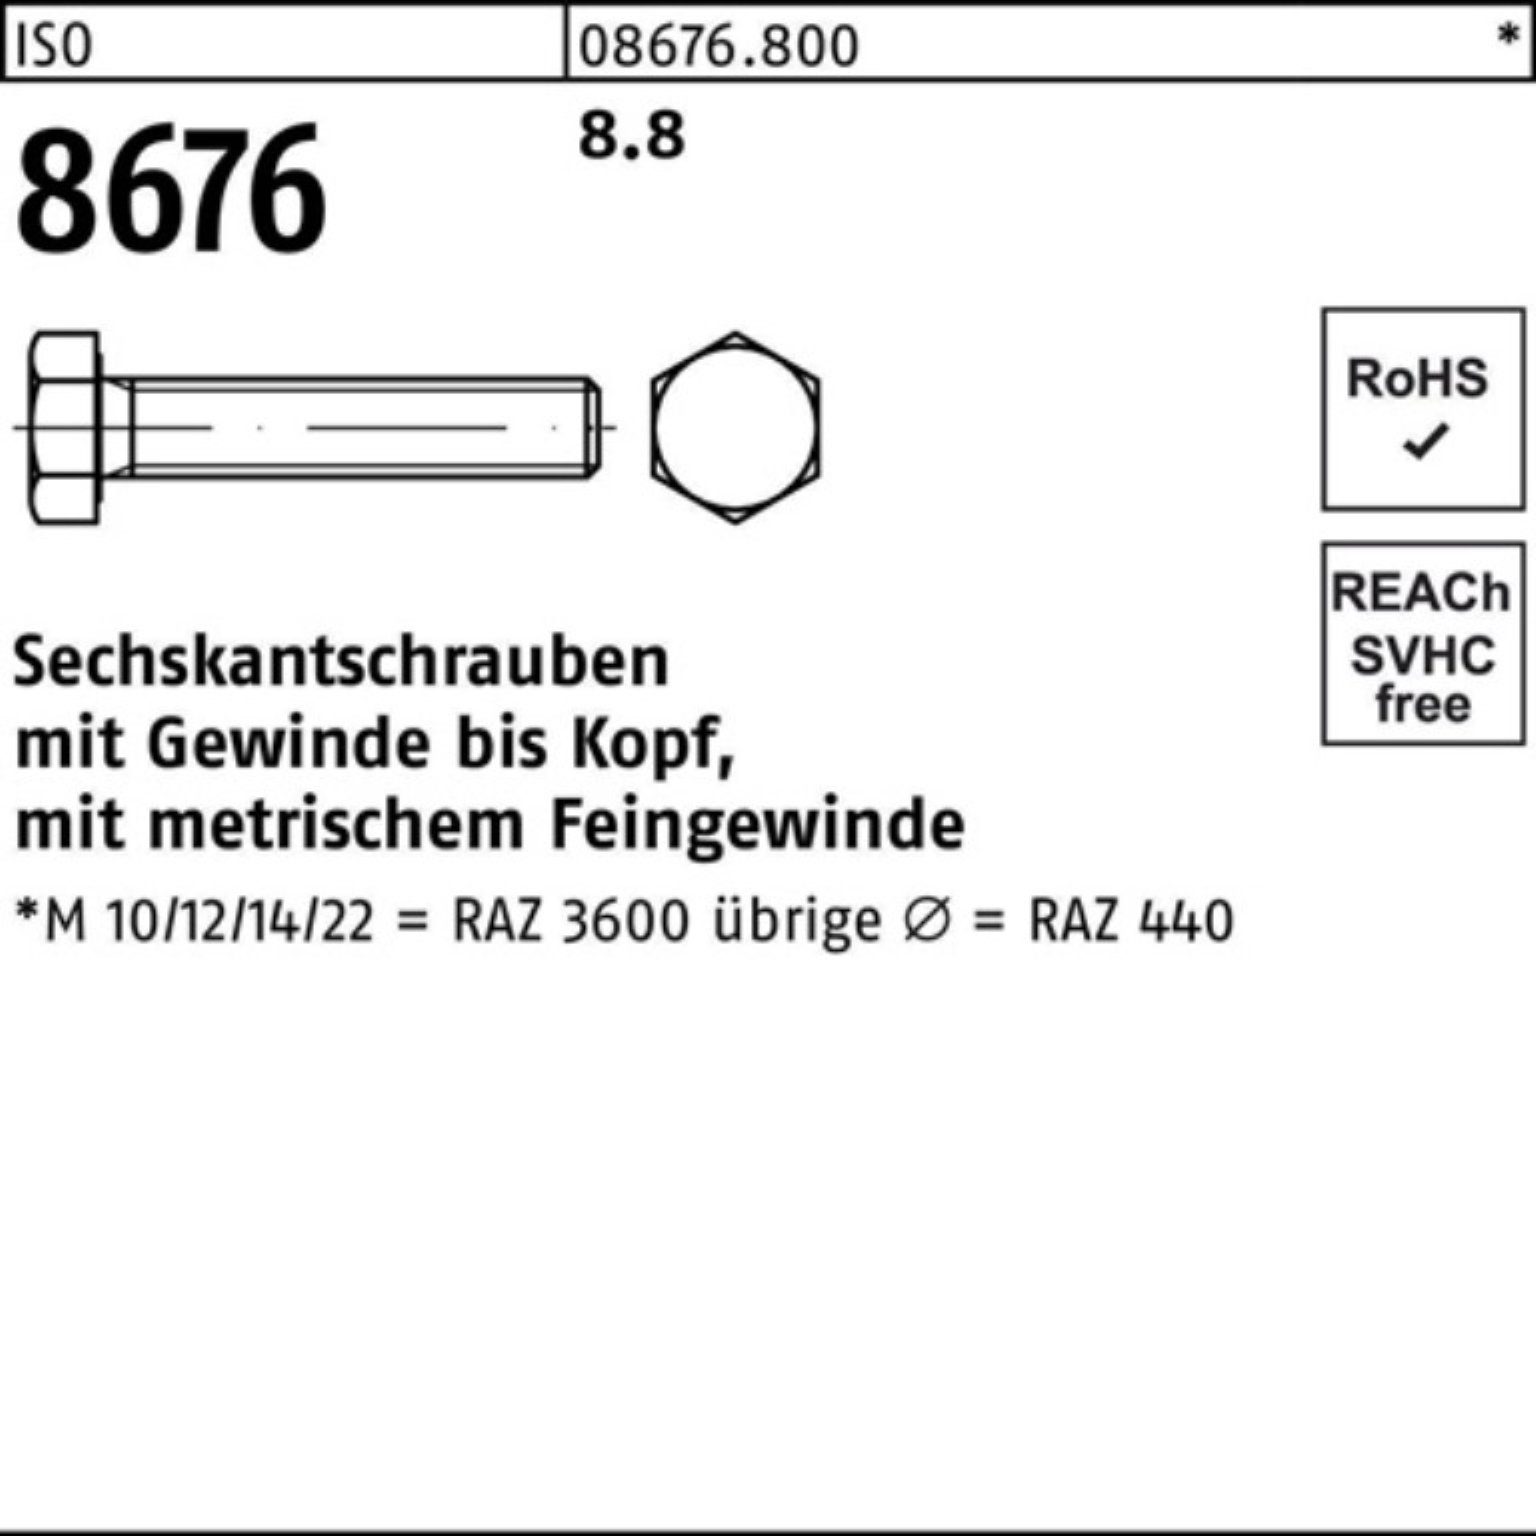 Sechskantschraube Reyher VG Stück ISO 100er 100 Pack 25 M14x1,5x IS 8.8 8676 Sechskantschraube